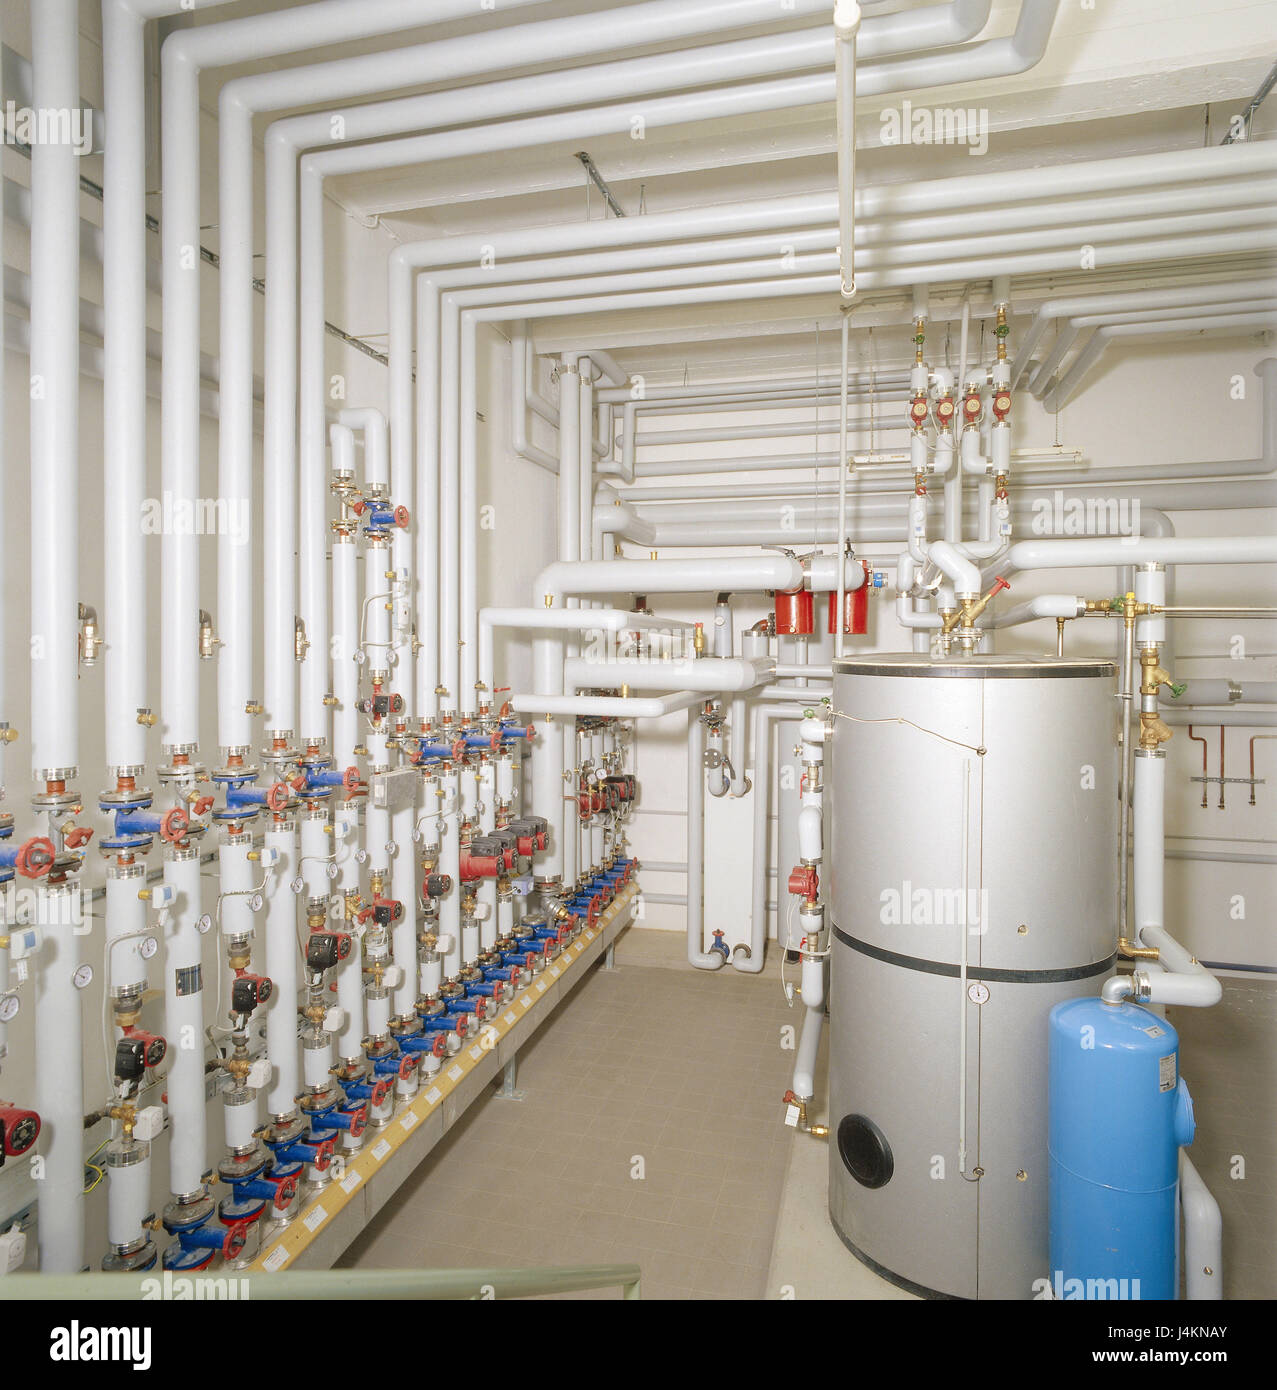 Calentador De Agua Caliente Por Caldera Fotos e Imágenes de stock - Alamy